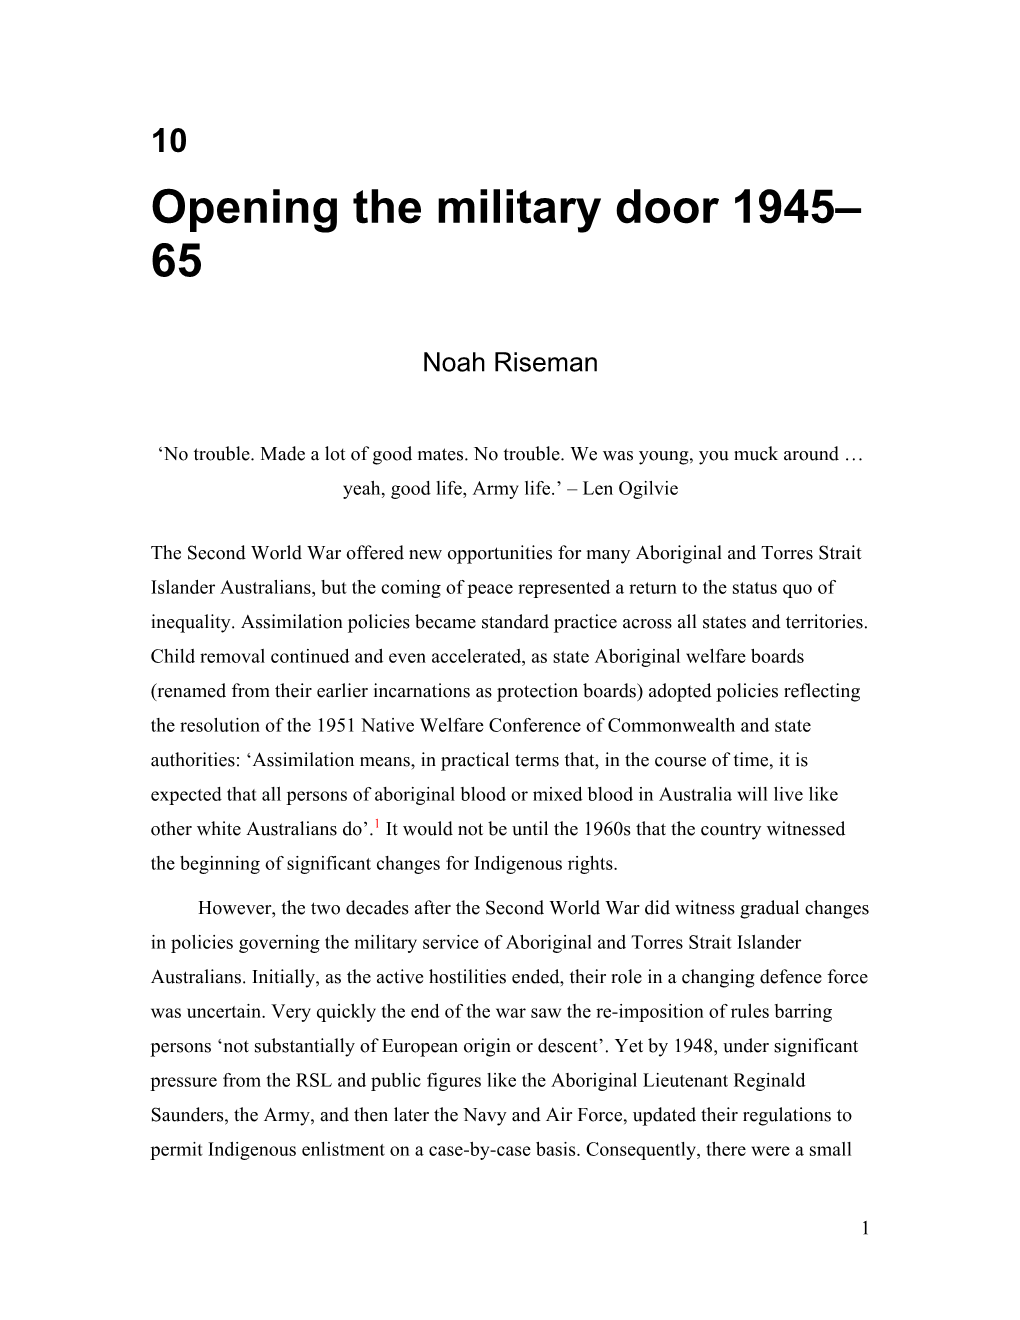 Opening the Military Door, 1945-65